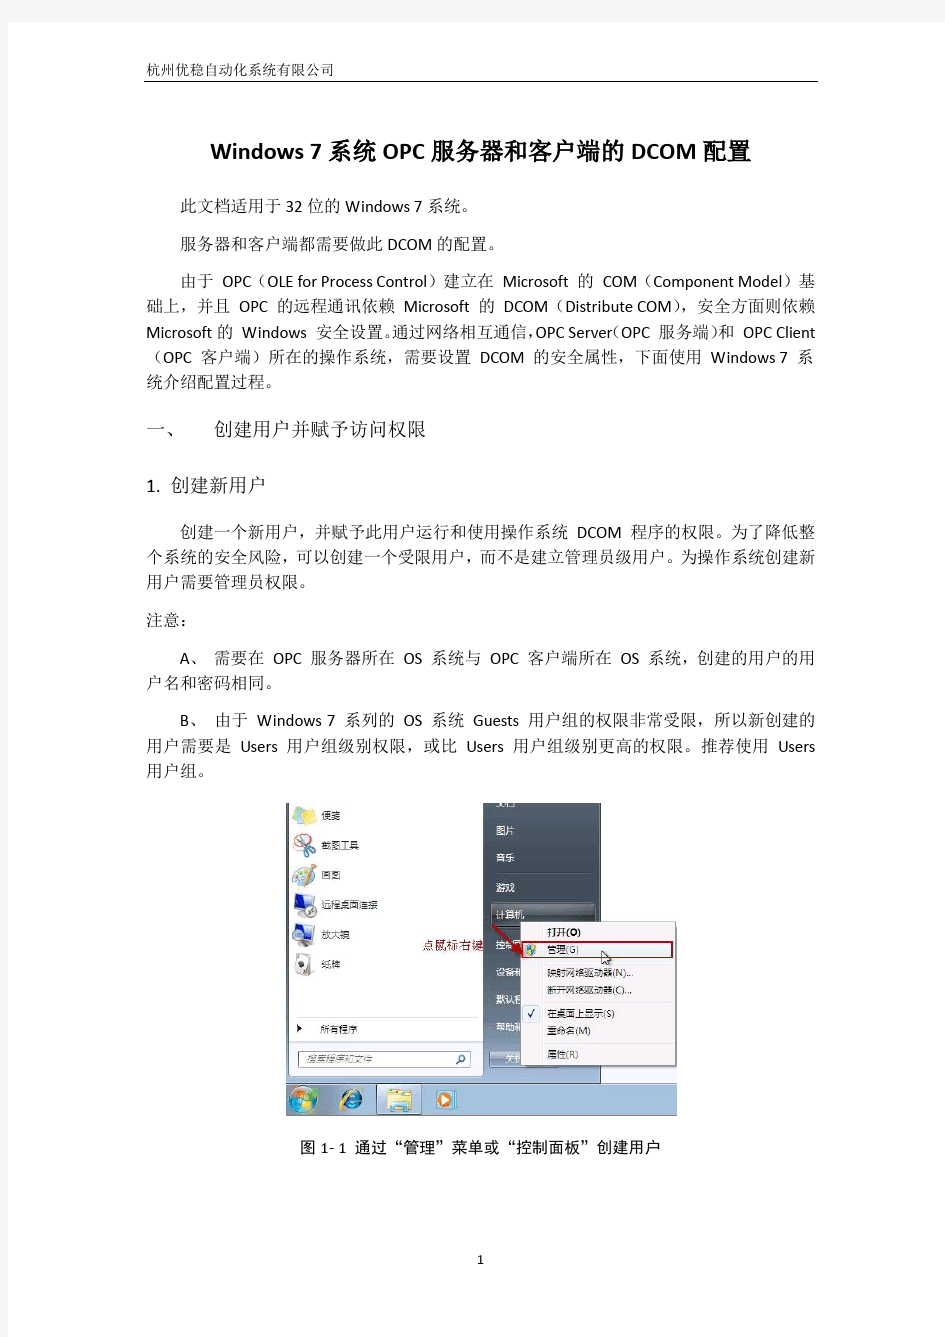 Windows 7系统OPC服务器和客户端的DCOM配置手册